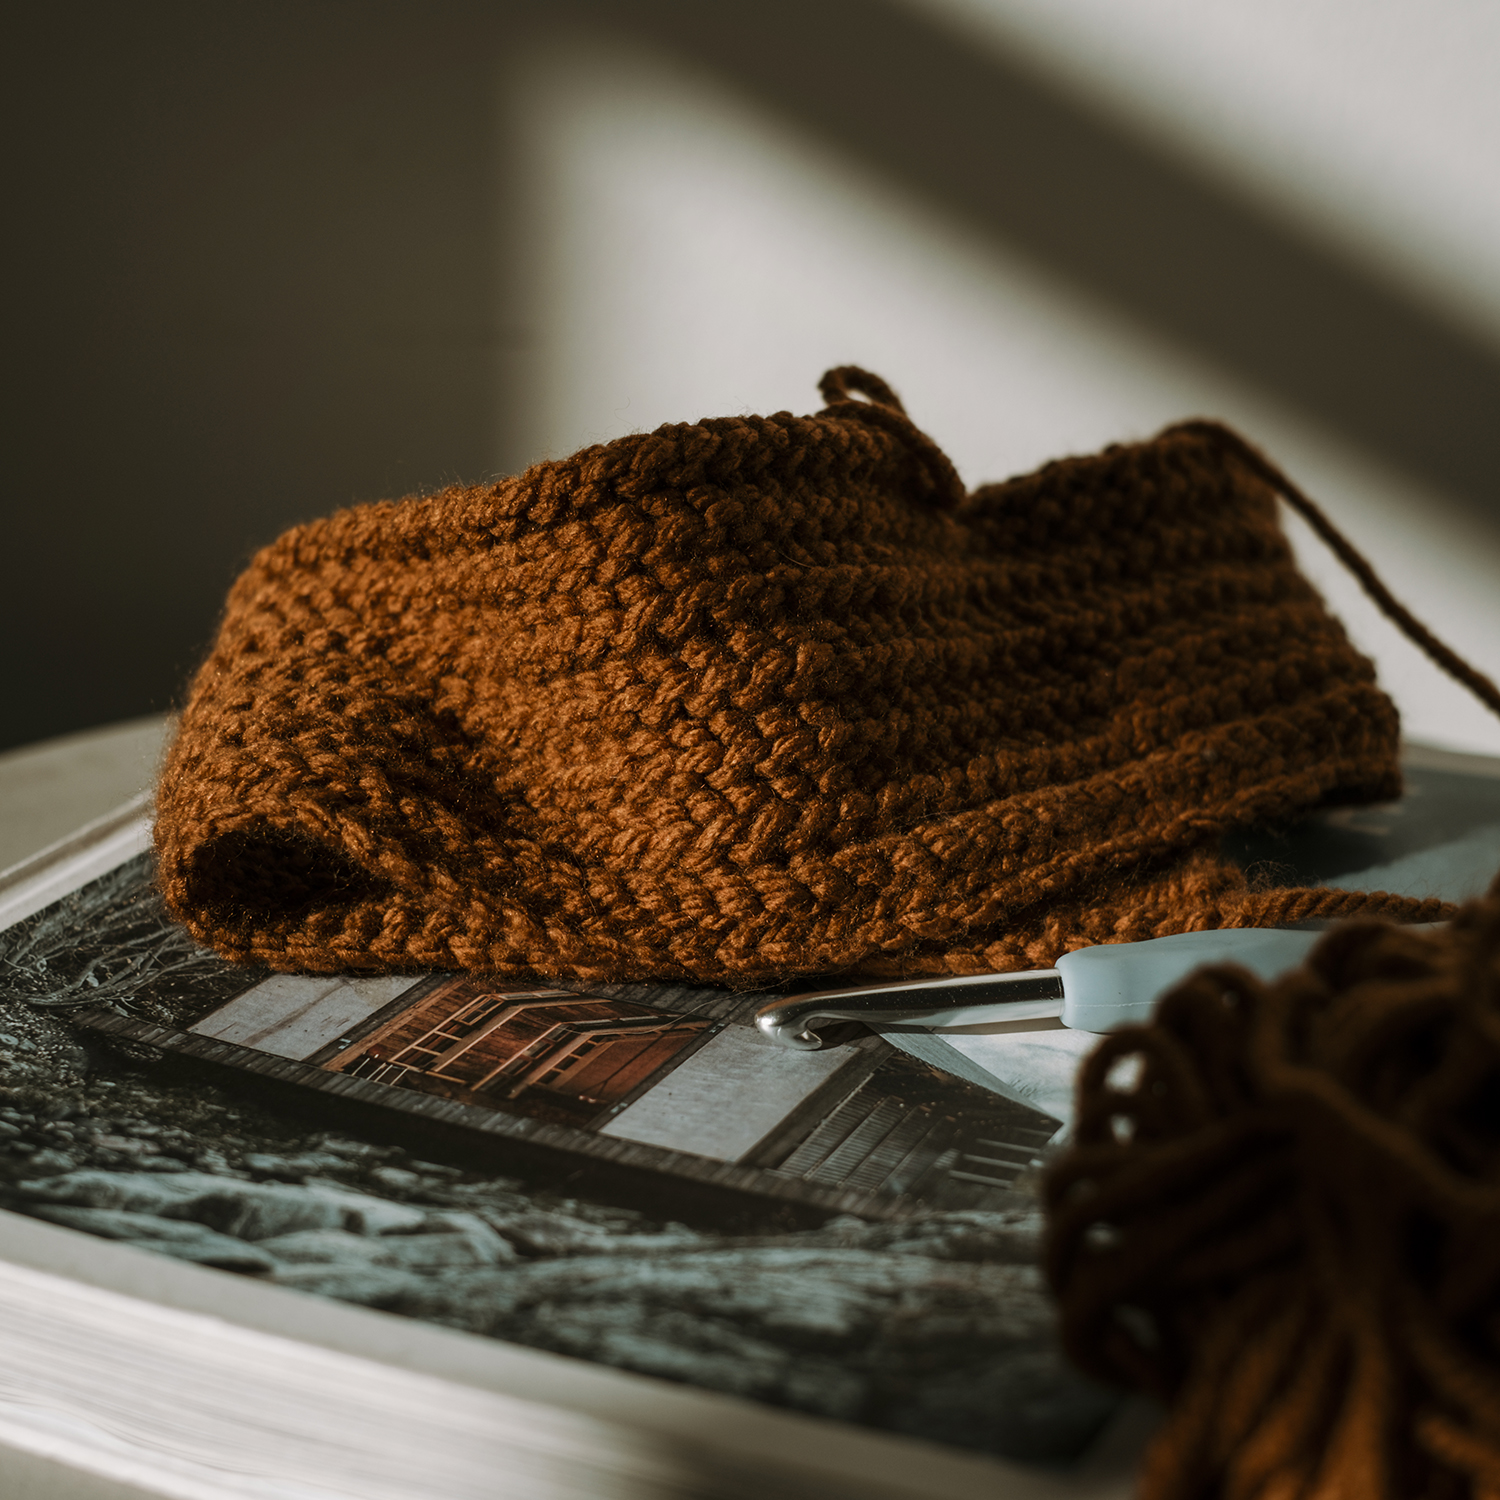 Crochet practice, rusty autumn yarn, www.Fenne.be